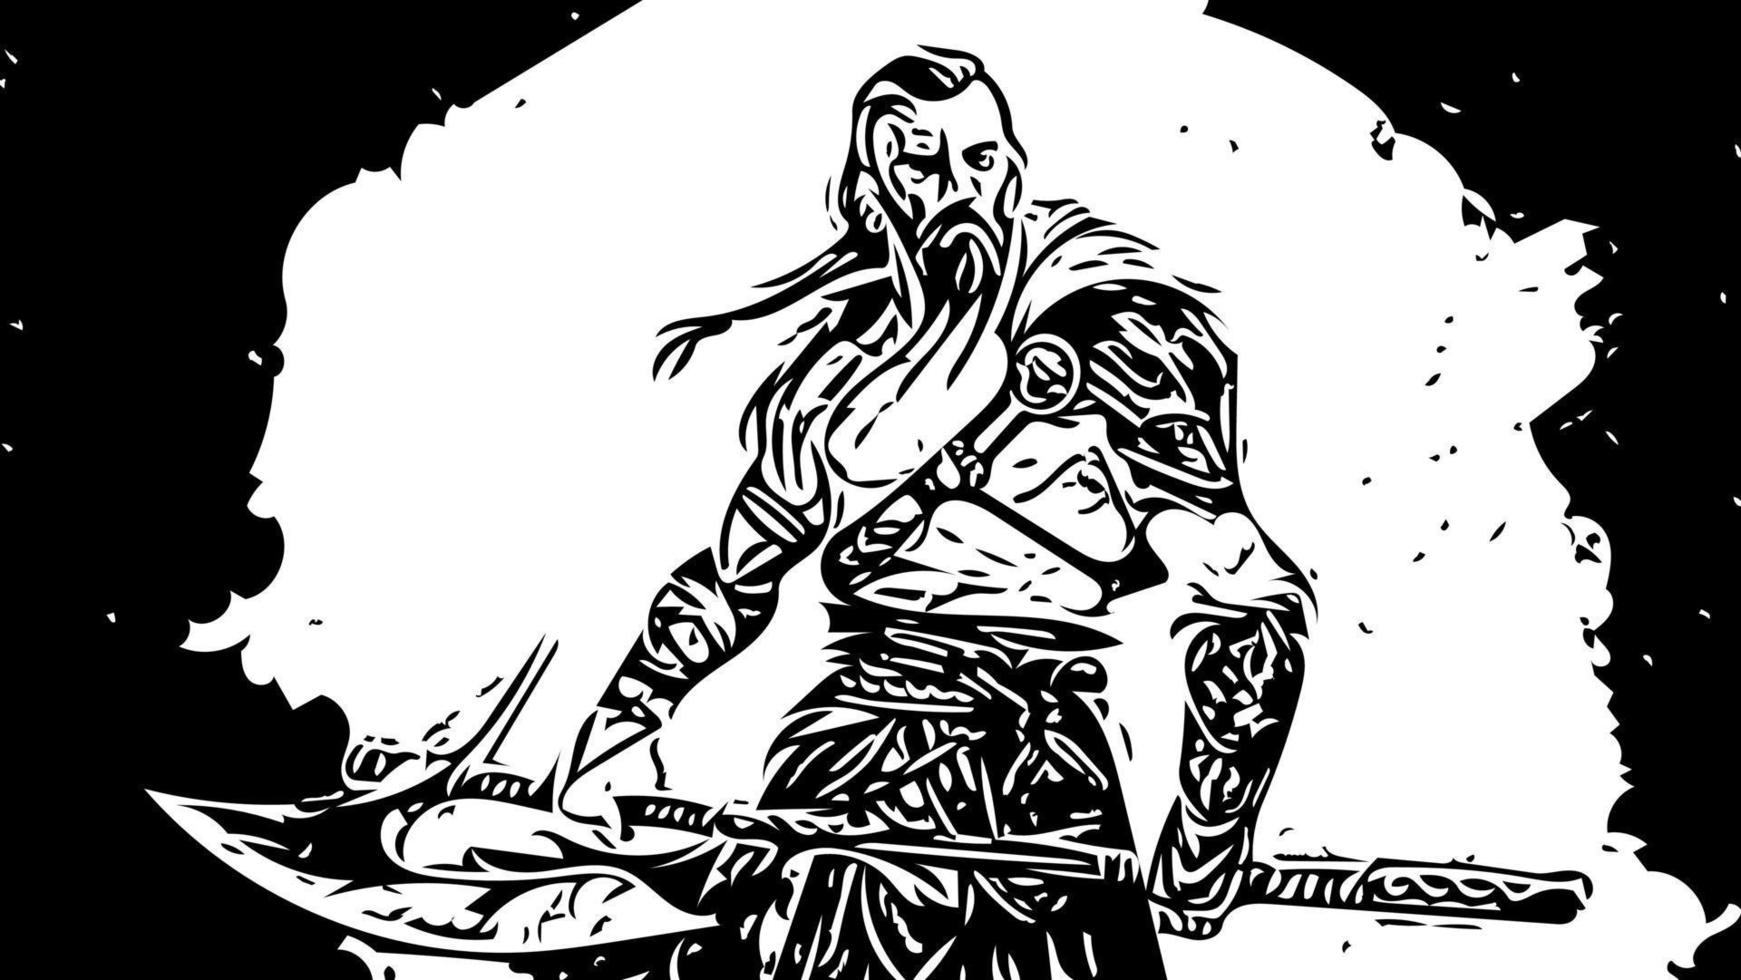 medeltida krigare viking med tatuering och i hud med axlar attacker fiende illustration vektor